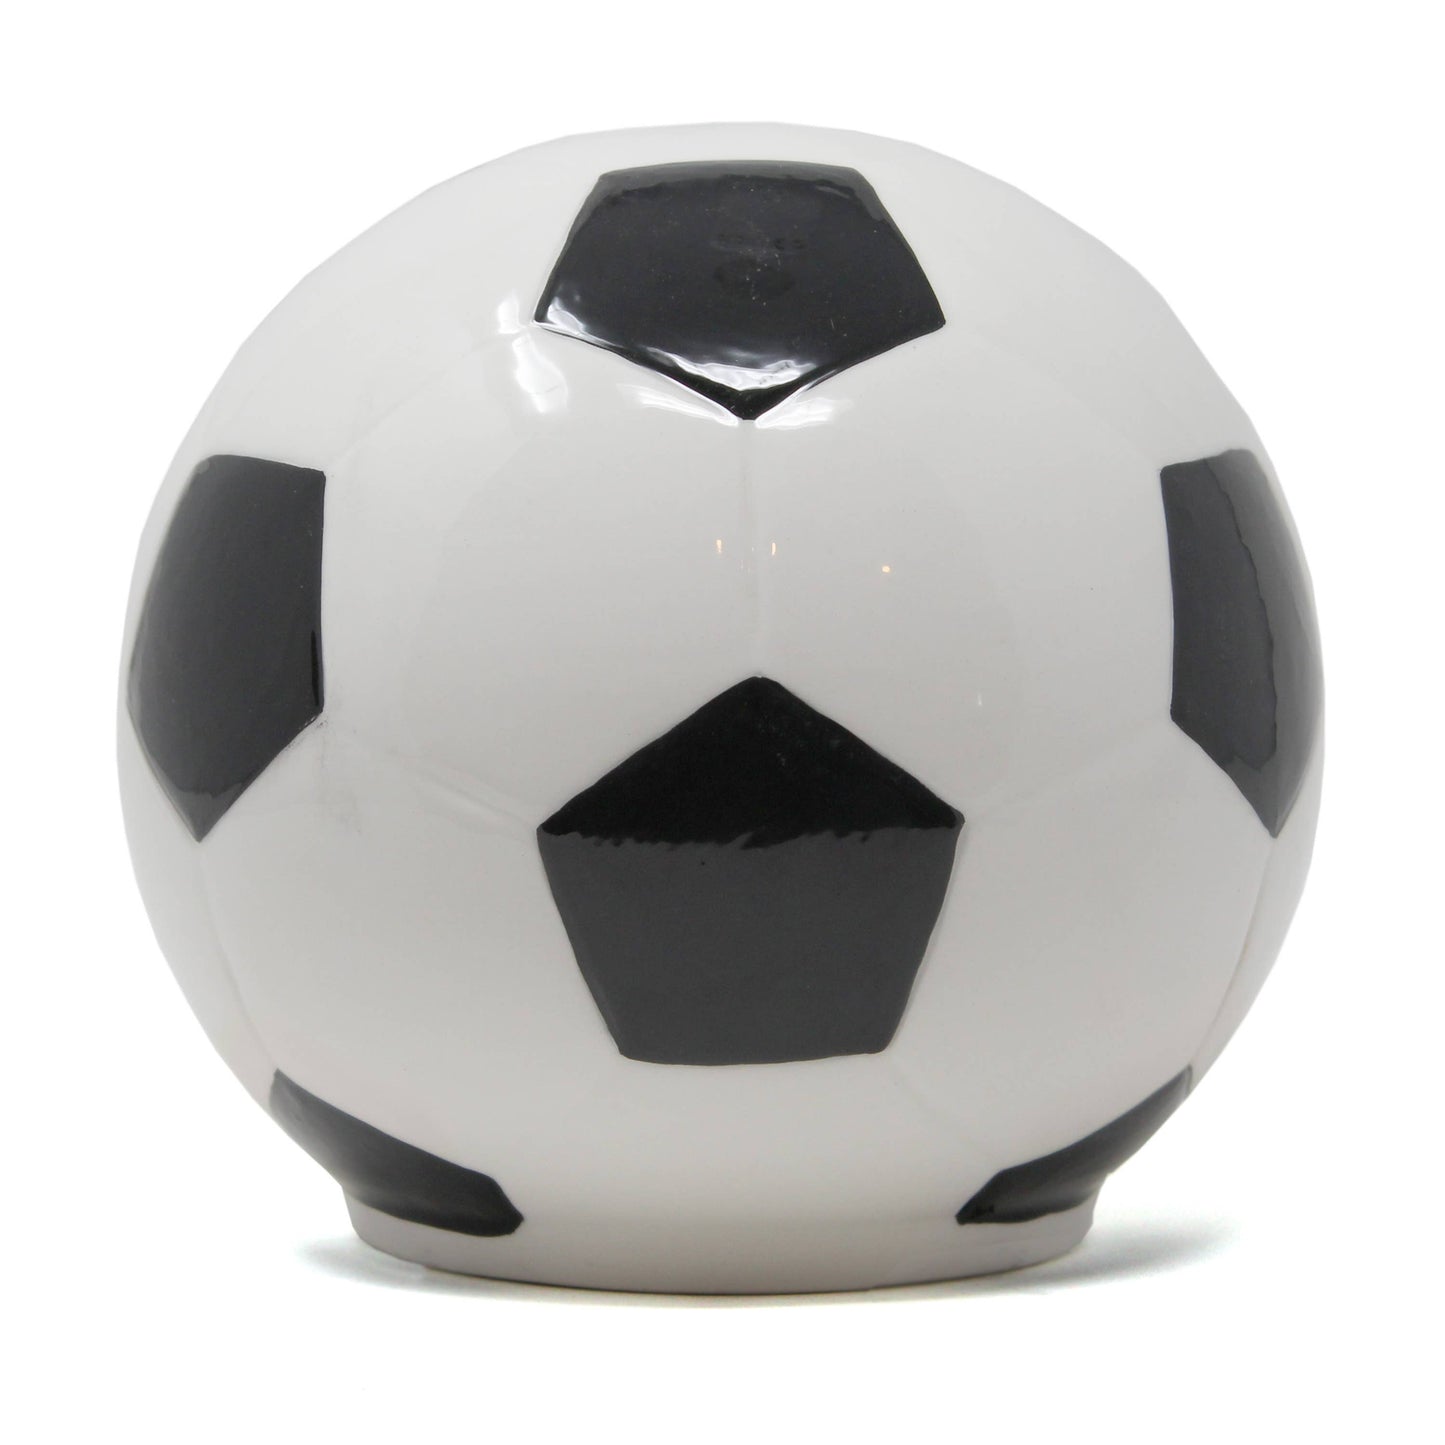 Soccerball Bank - Einstein's Attic